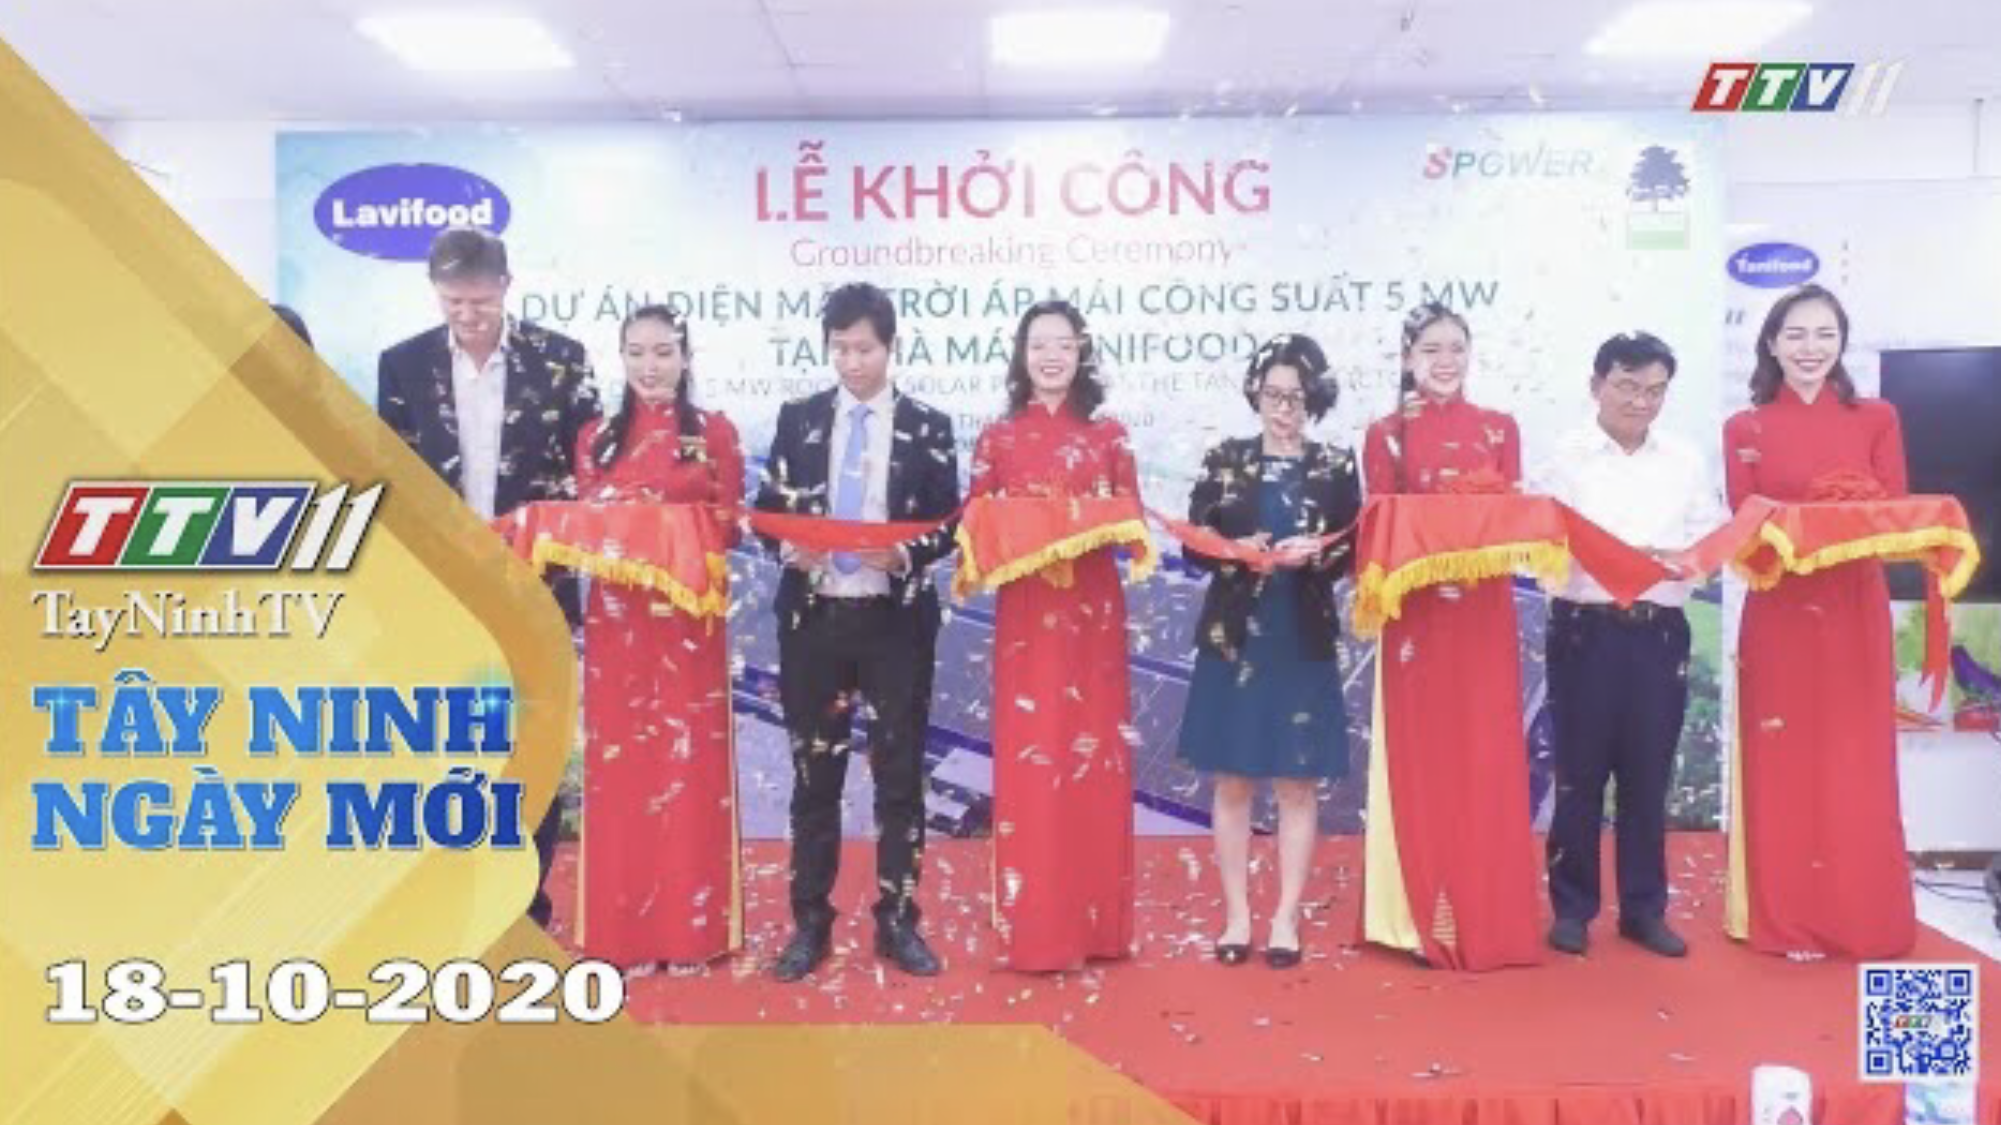 Tây Ninh Ngày Mới 18-10-2020 | Tin tức hôm nay | TayNinhTV